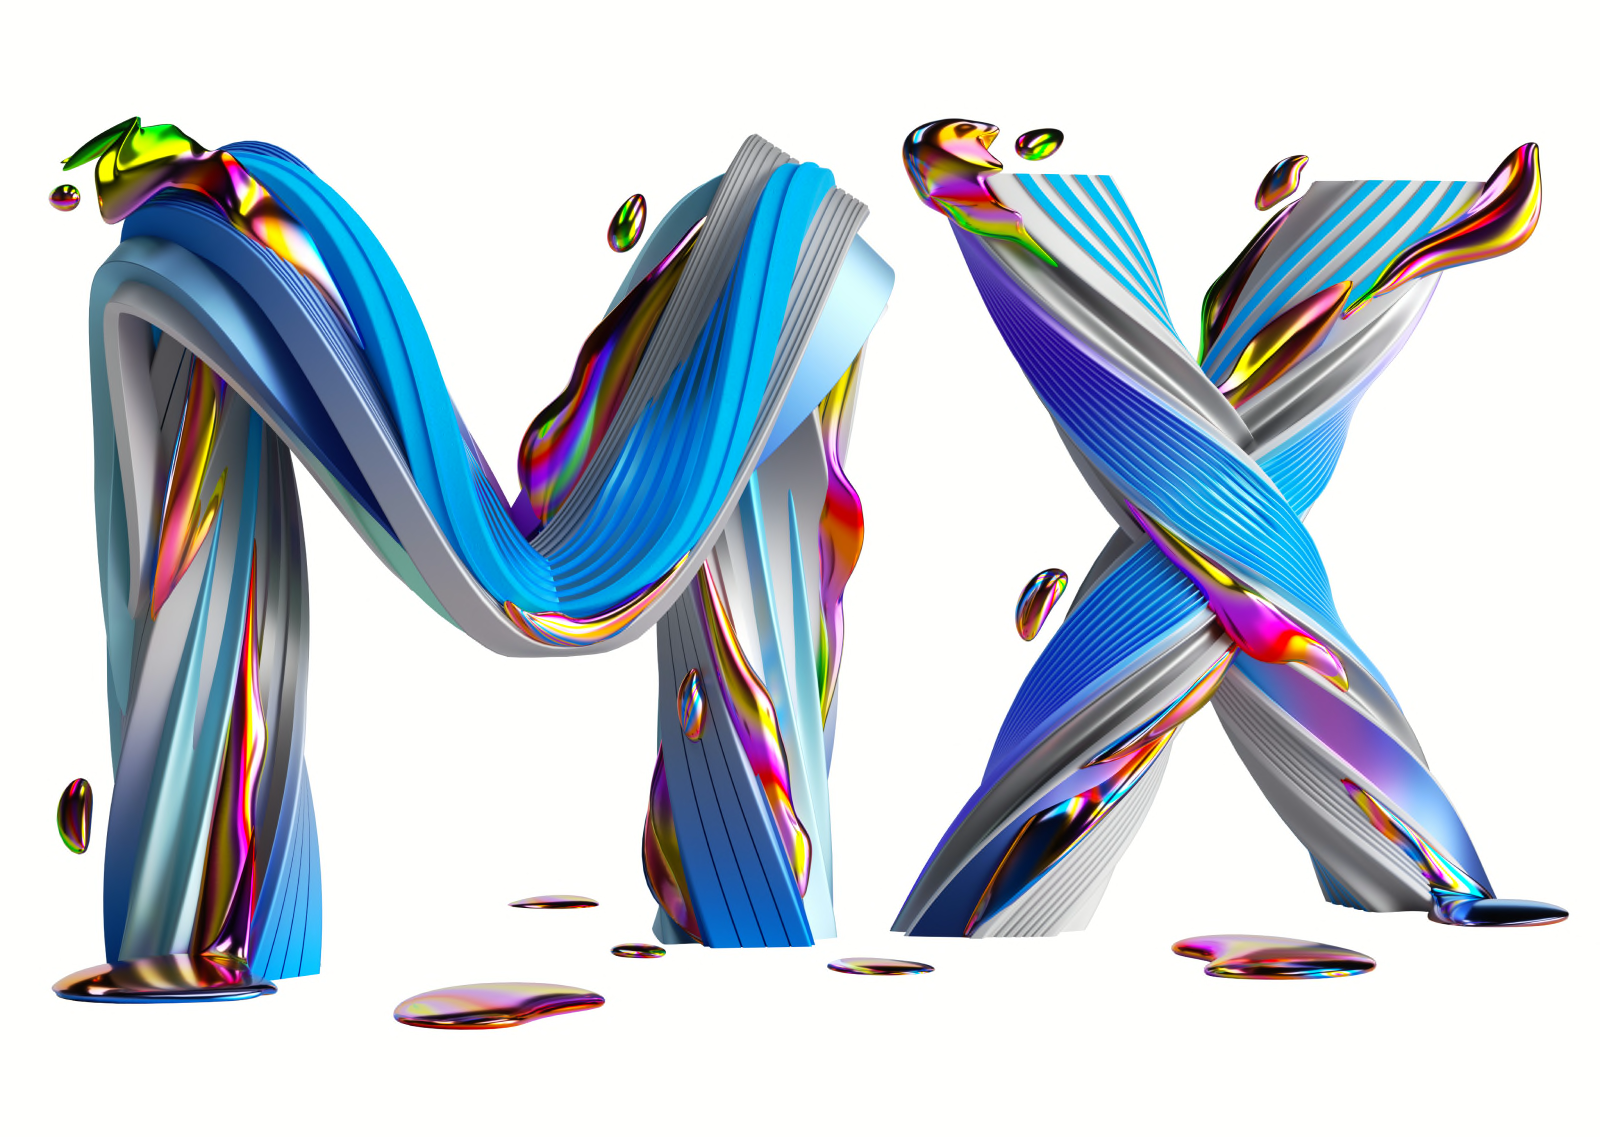 Icono de la serie MX